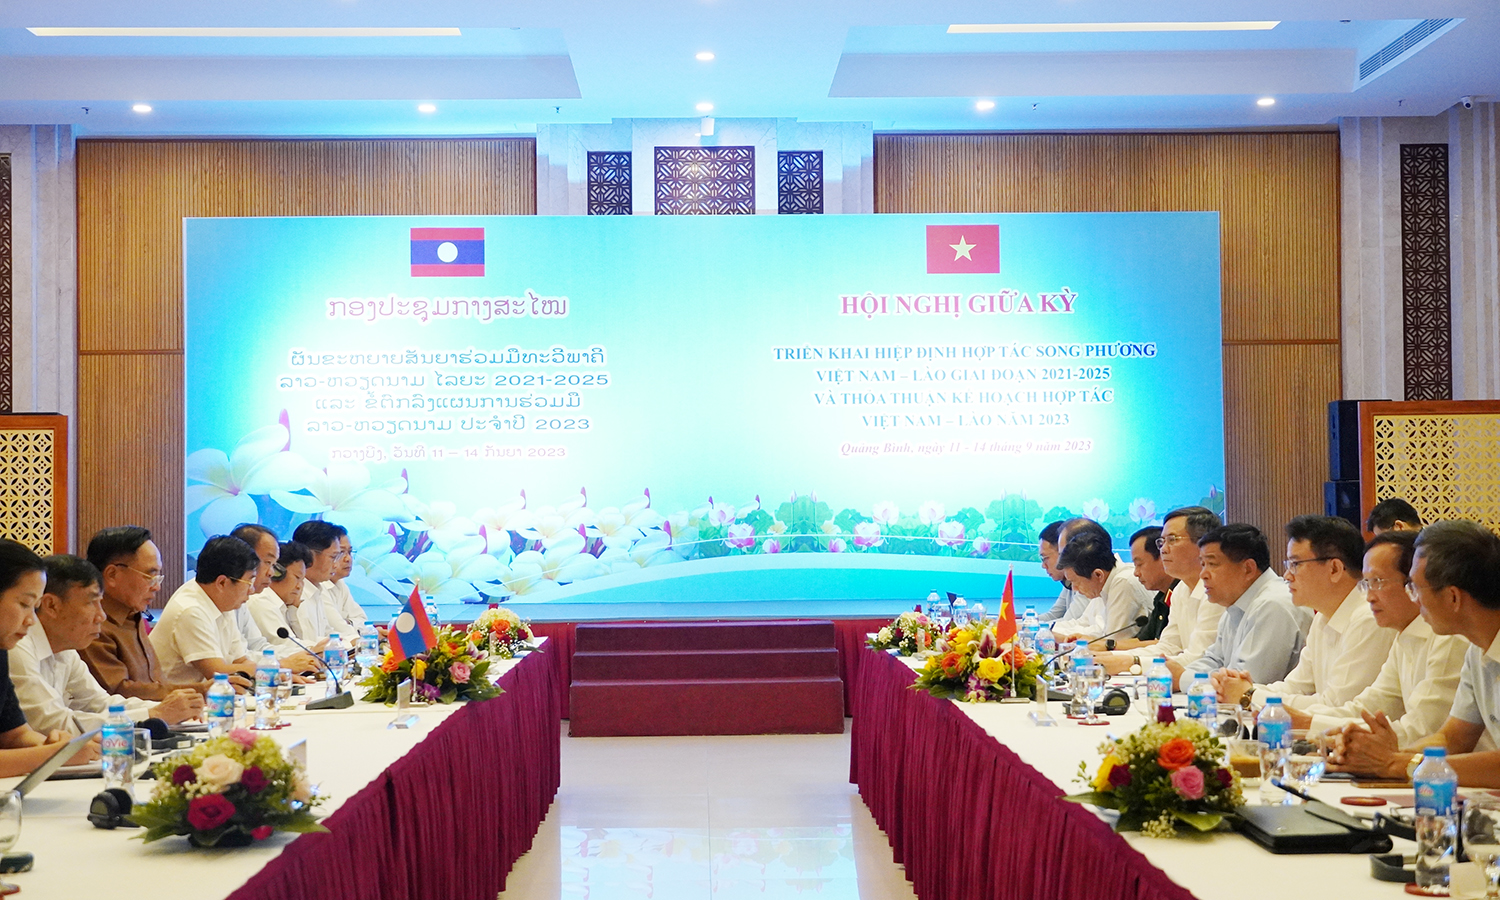 Hội nghị giữa kỳ triển khai Hiệp định hợp tác song phương Việt Nam-Lào